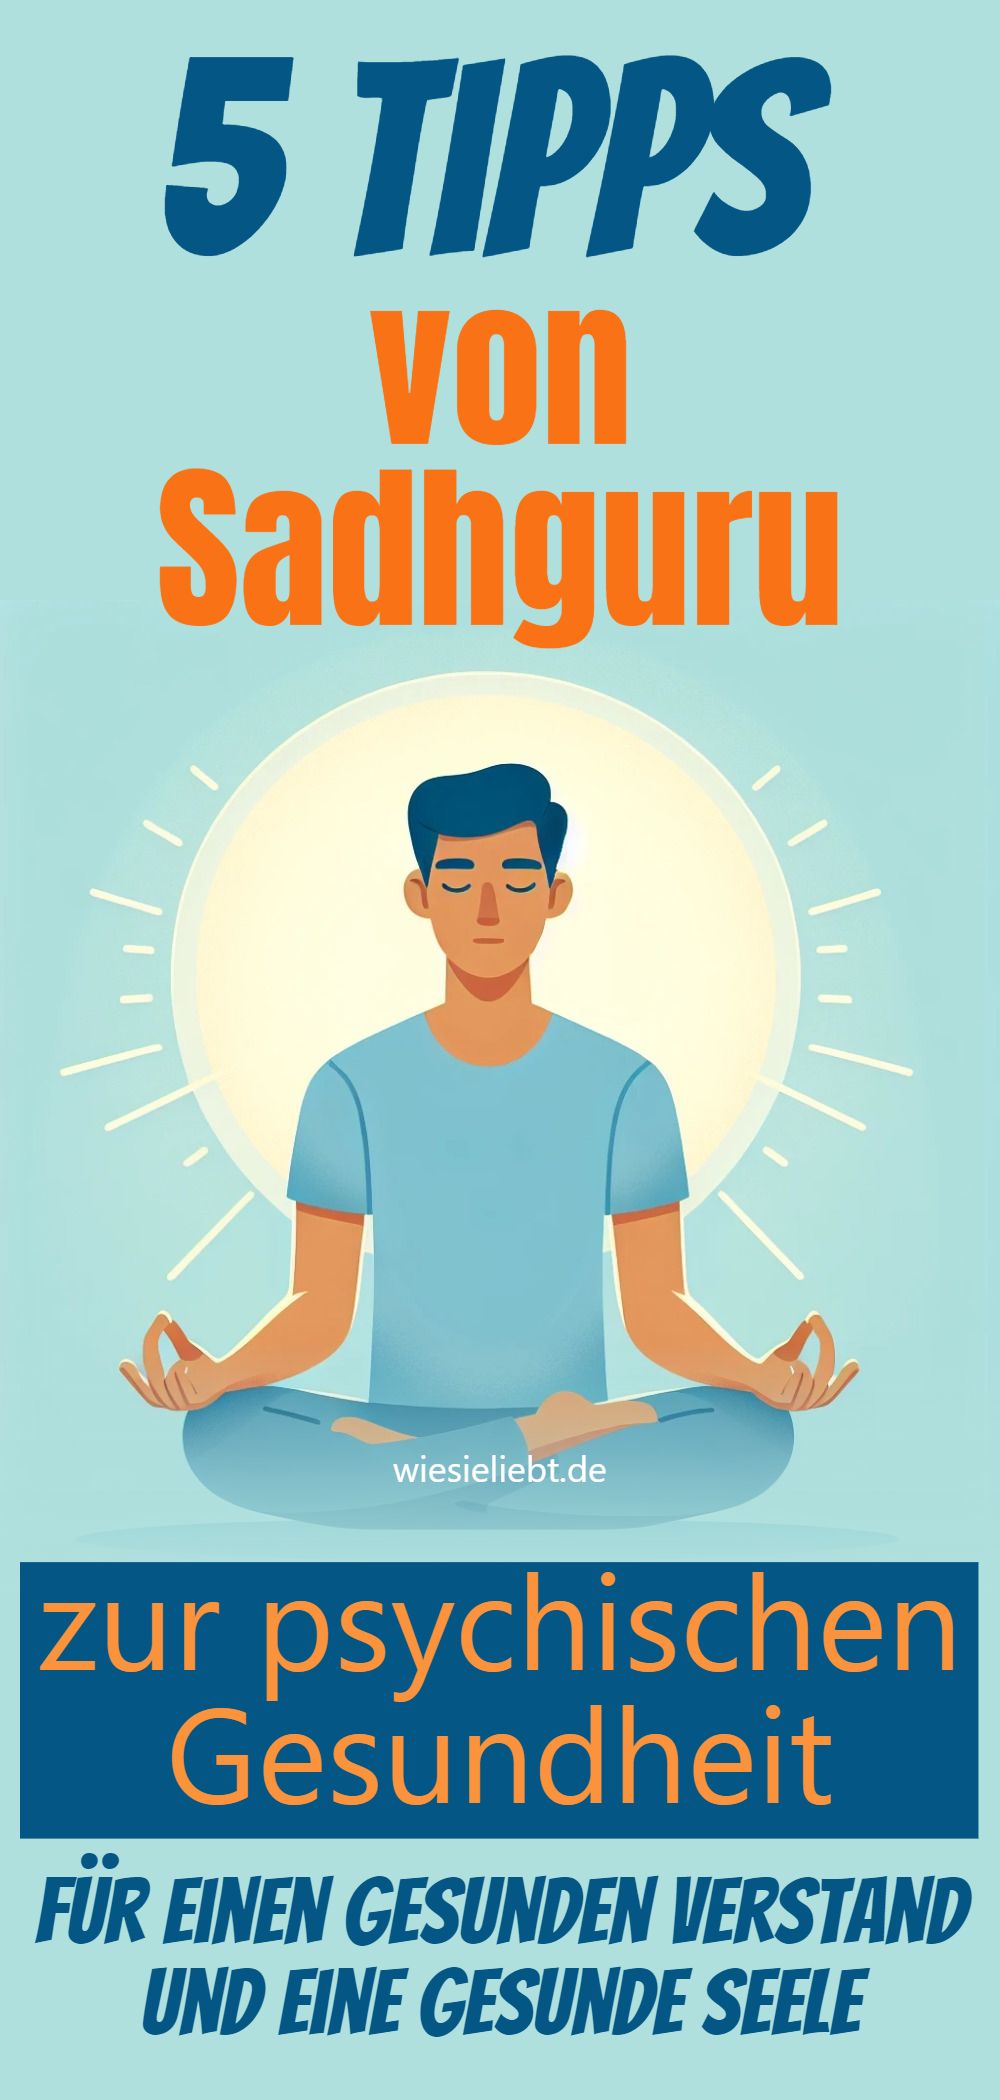 5 Tipps von Sadhguru zur psychischen Gesundheit für einen gesunden Verstand und eine gesunde Seele